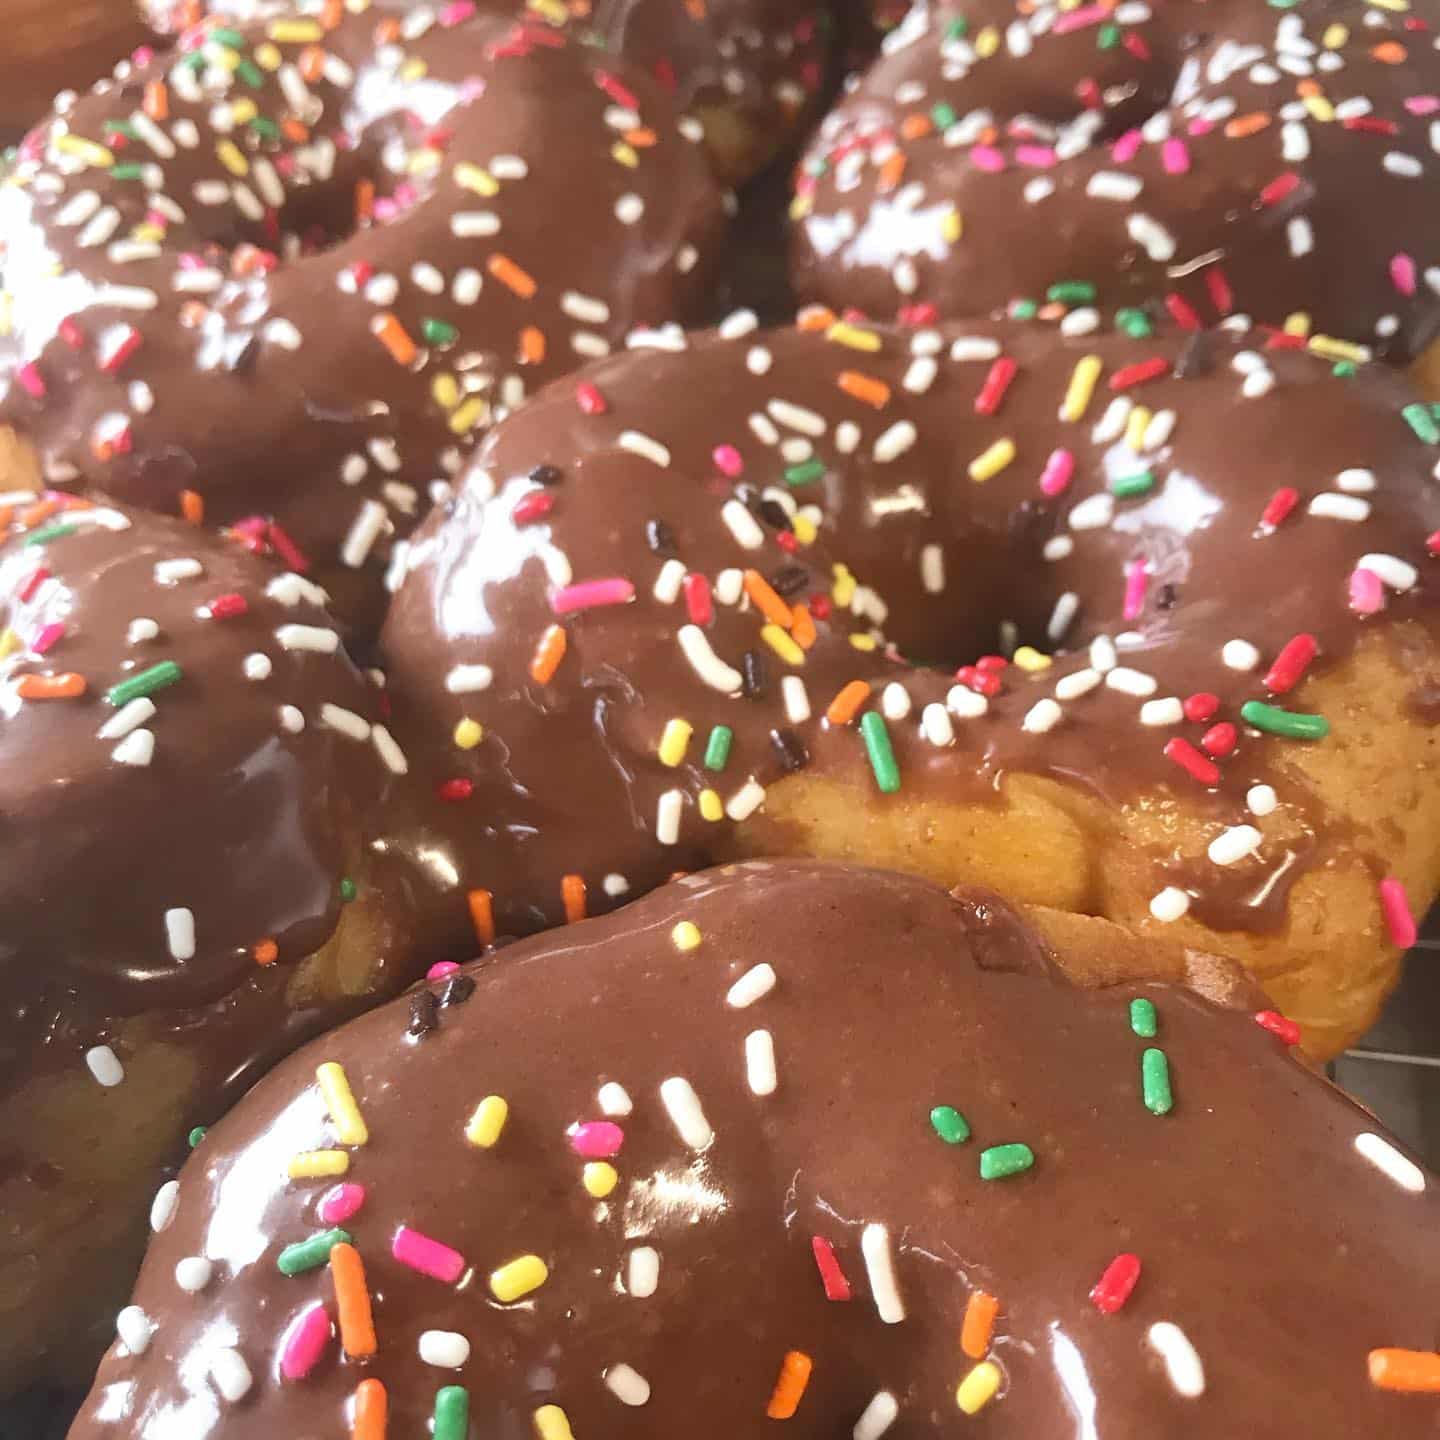 Chocolate Glazed Donuts with rainbow sprinkles